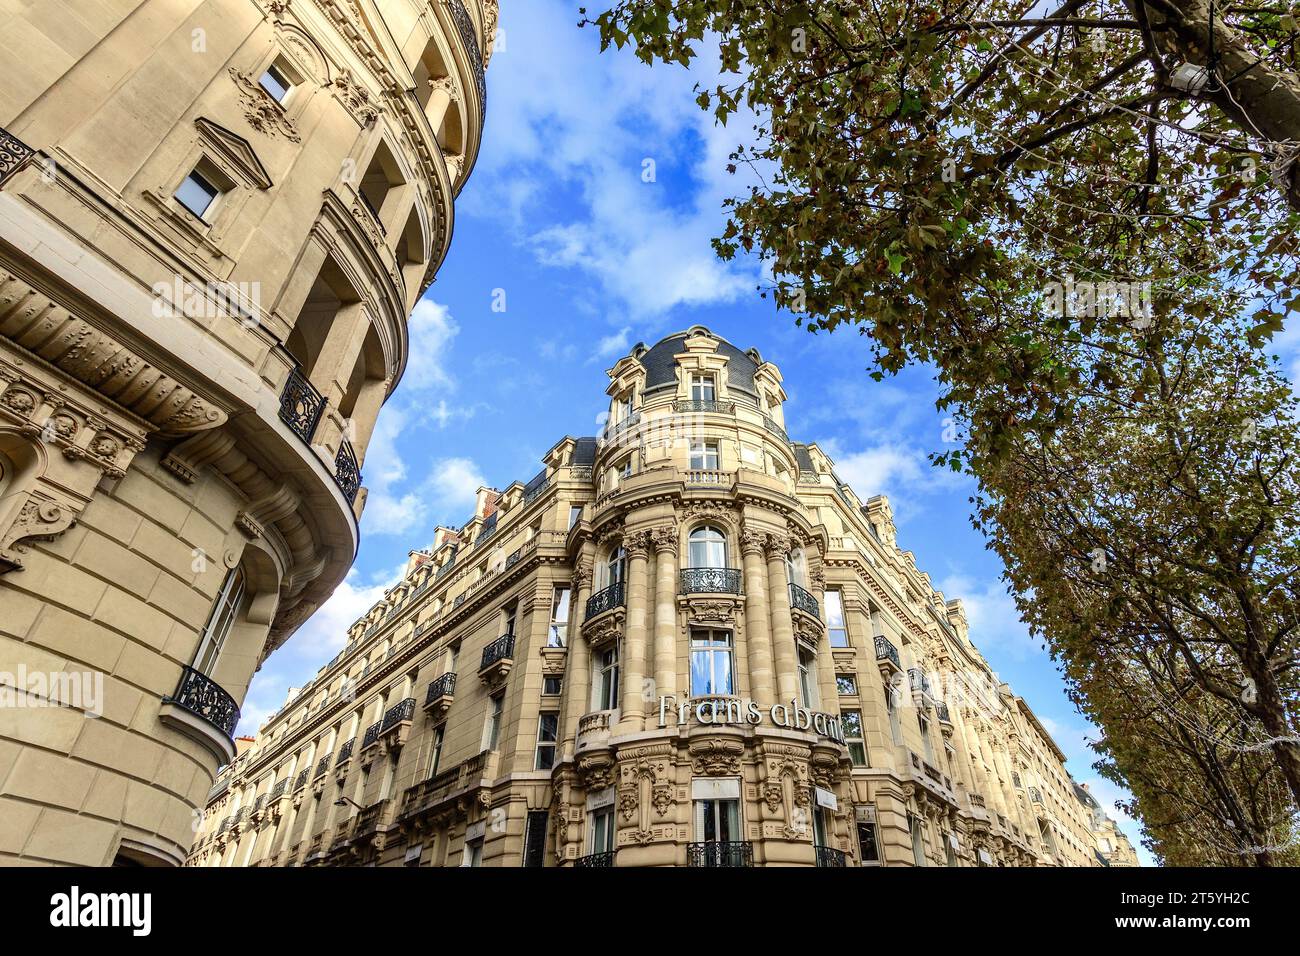 Architecture domestique parisienne typique du centre-ville du 19e siècle reconstruite par Haussmann pour Napoléon III - Paris, France. Banque D'Images